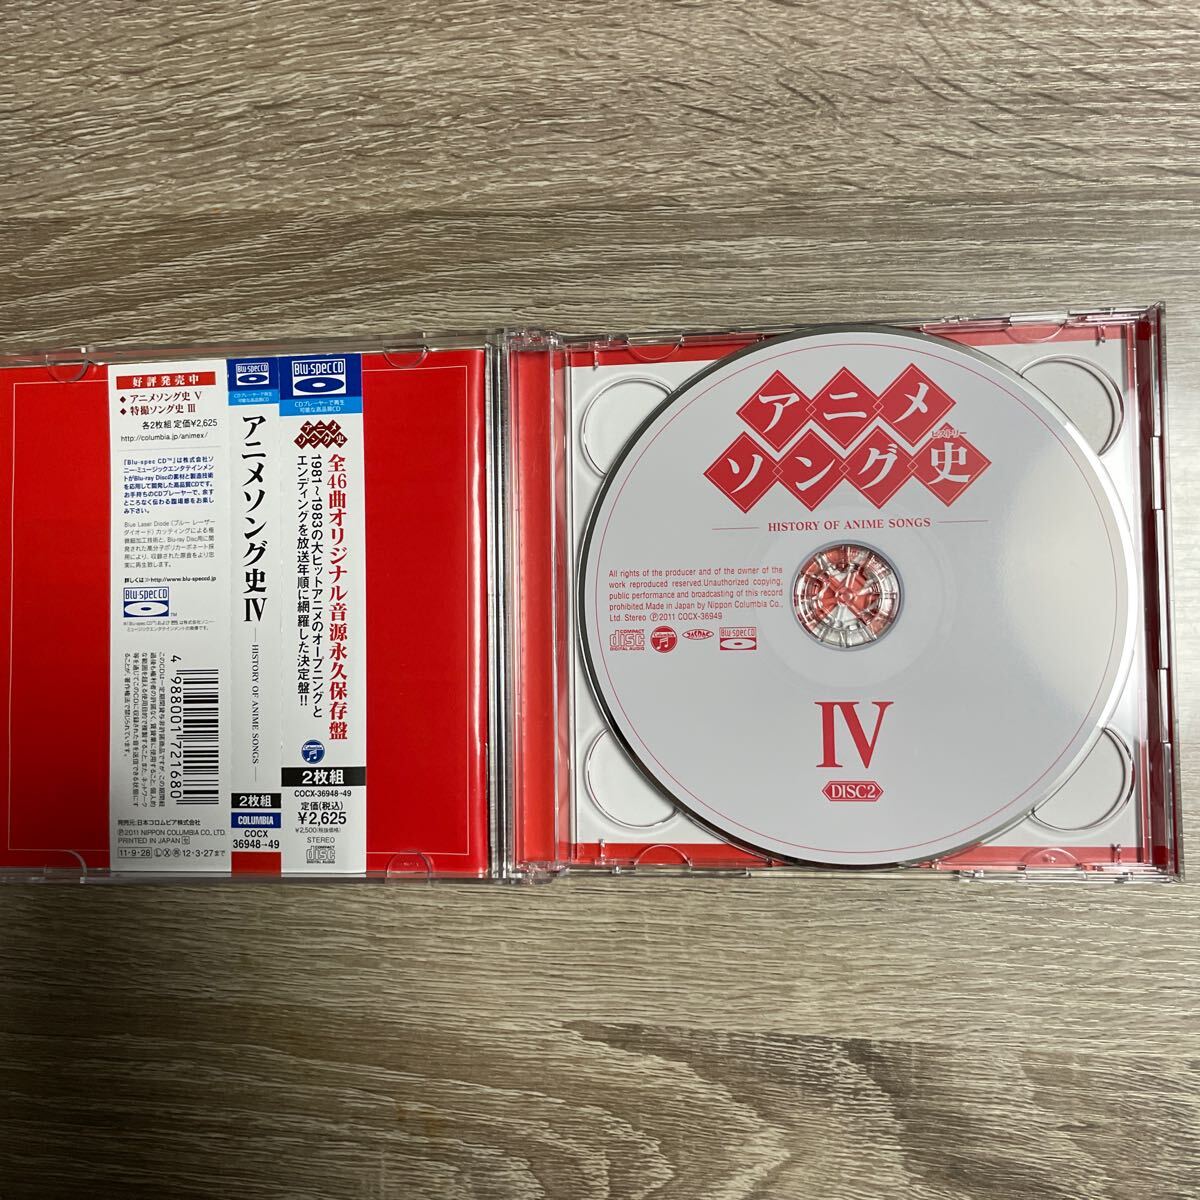 アニメソング史 Ⅳヒストリー CD _画像3